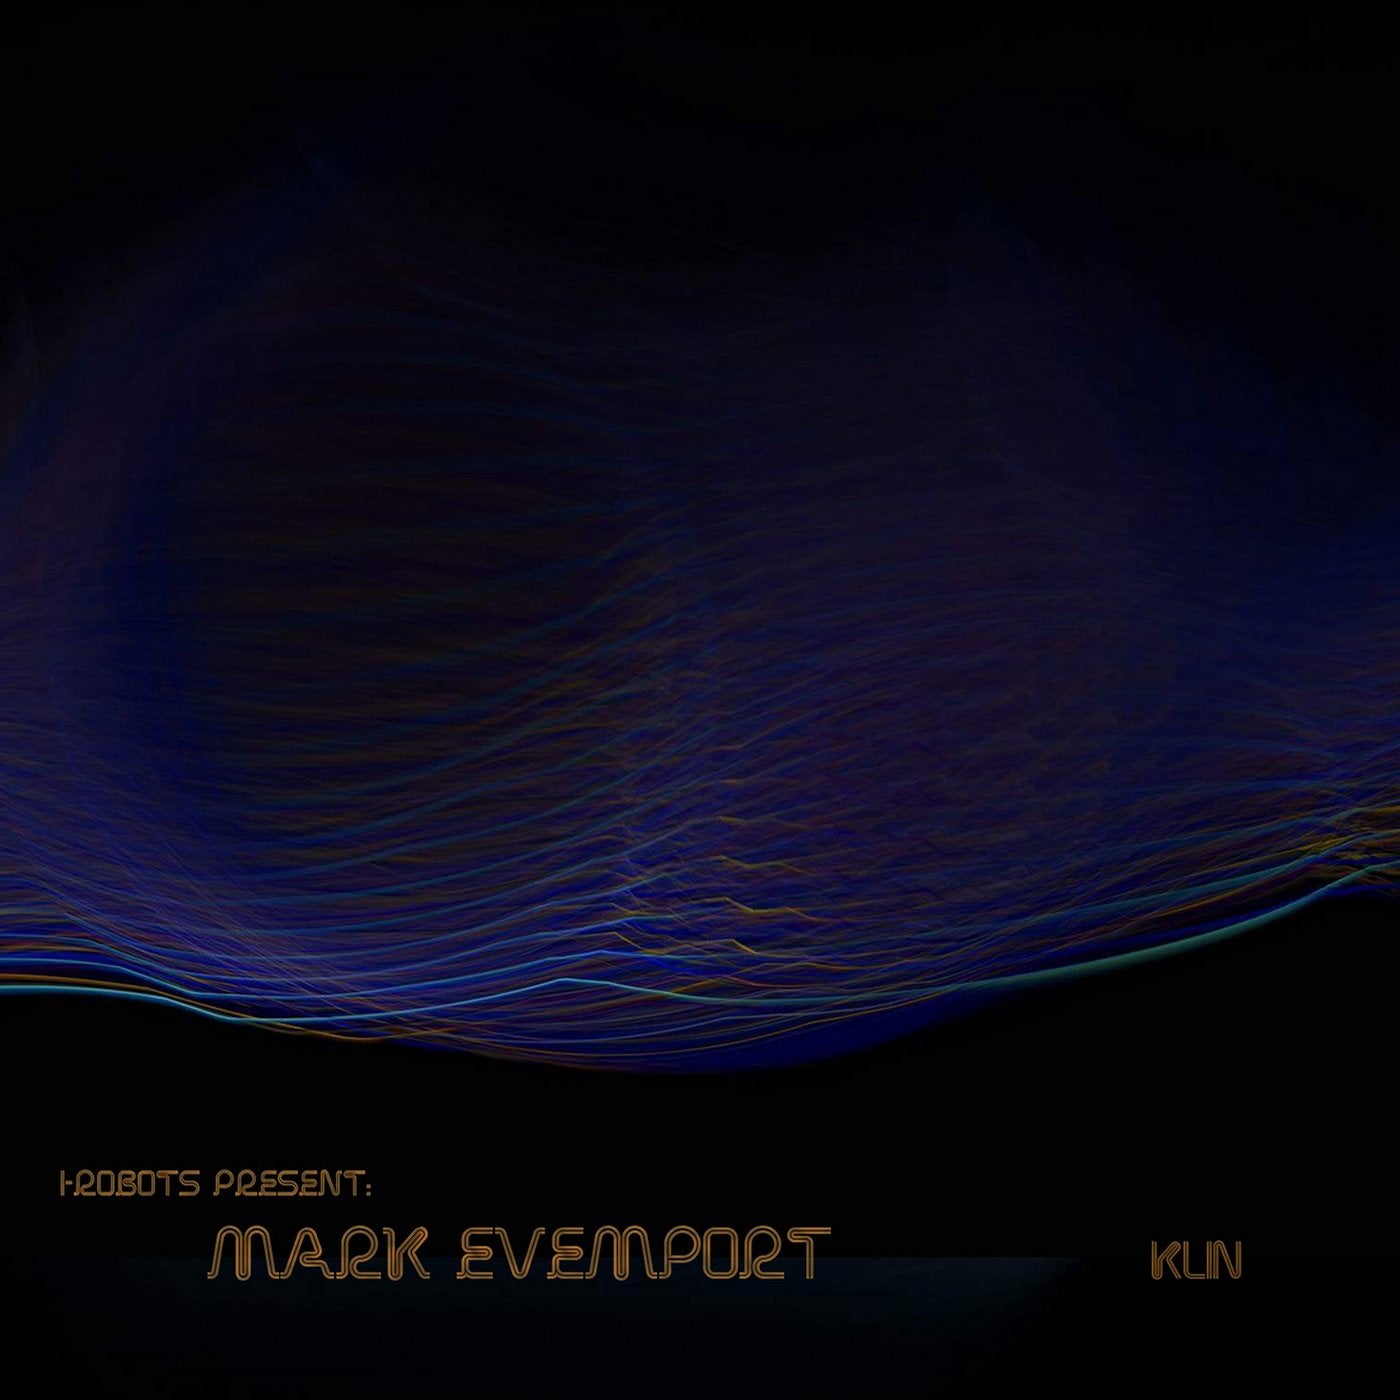 Mark Evemport - Klin